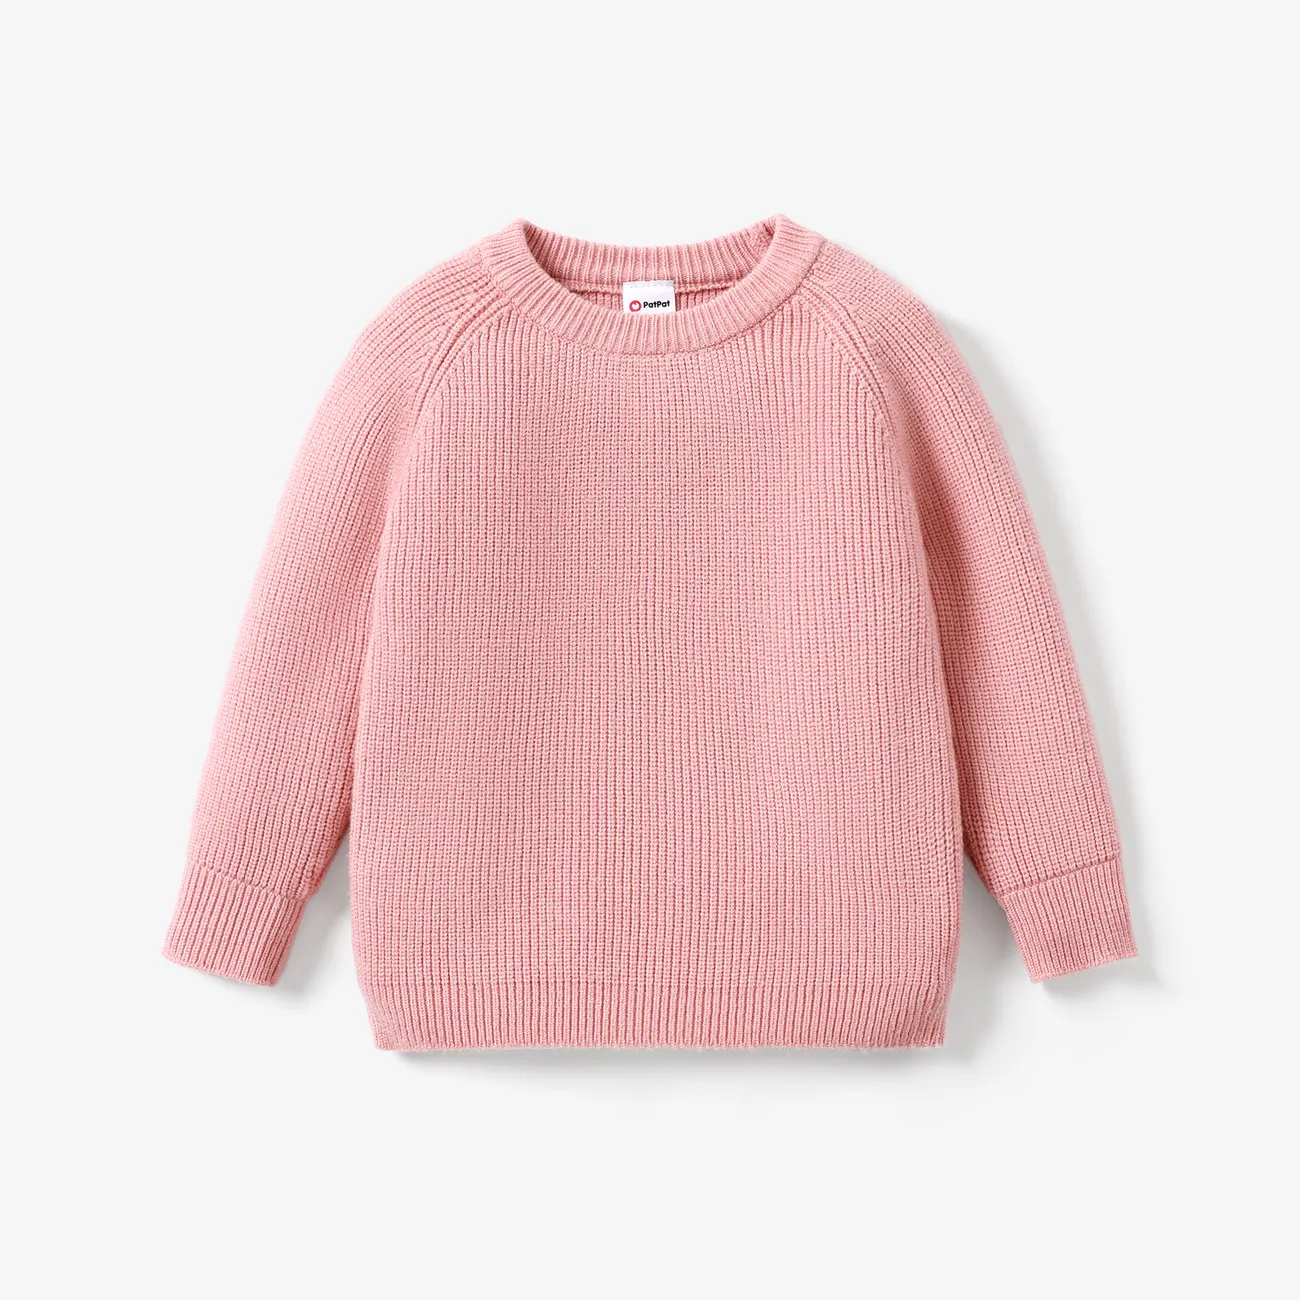 Toddler/Kid Girl/Boy Solid Inserted Shoulder Design Sweater  Pink big image 1